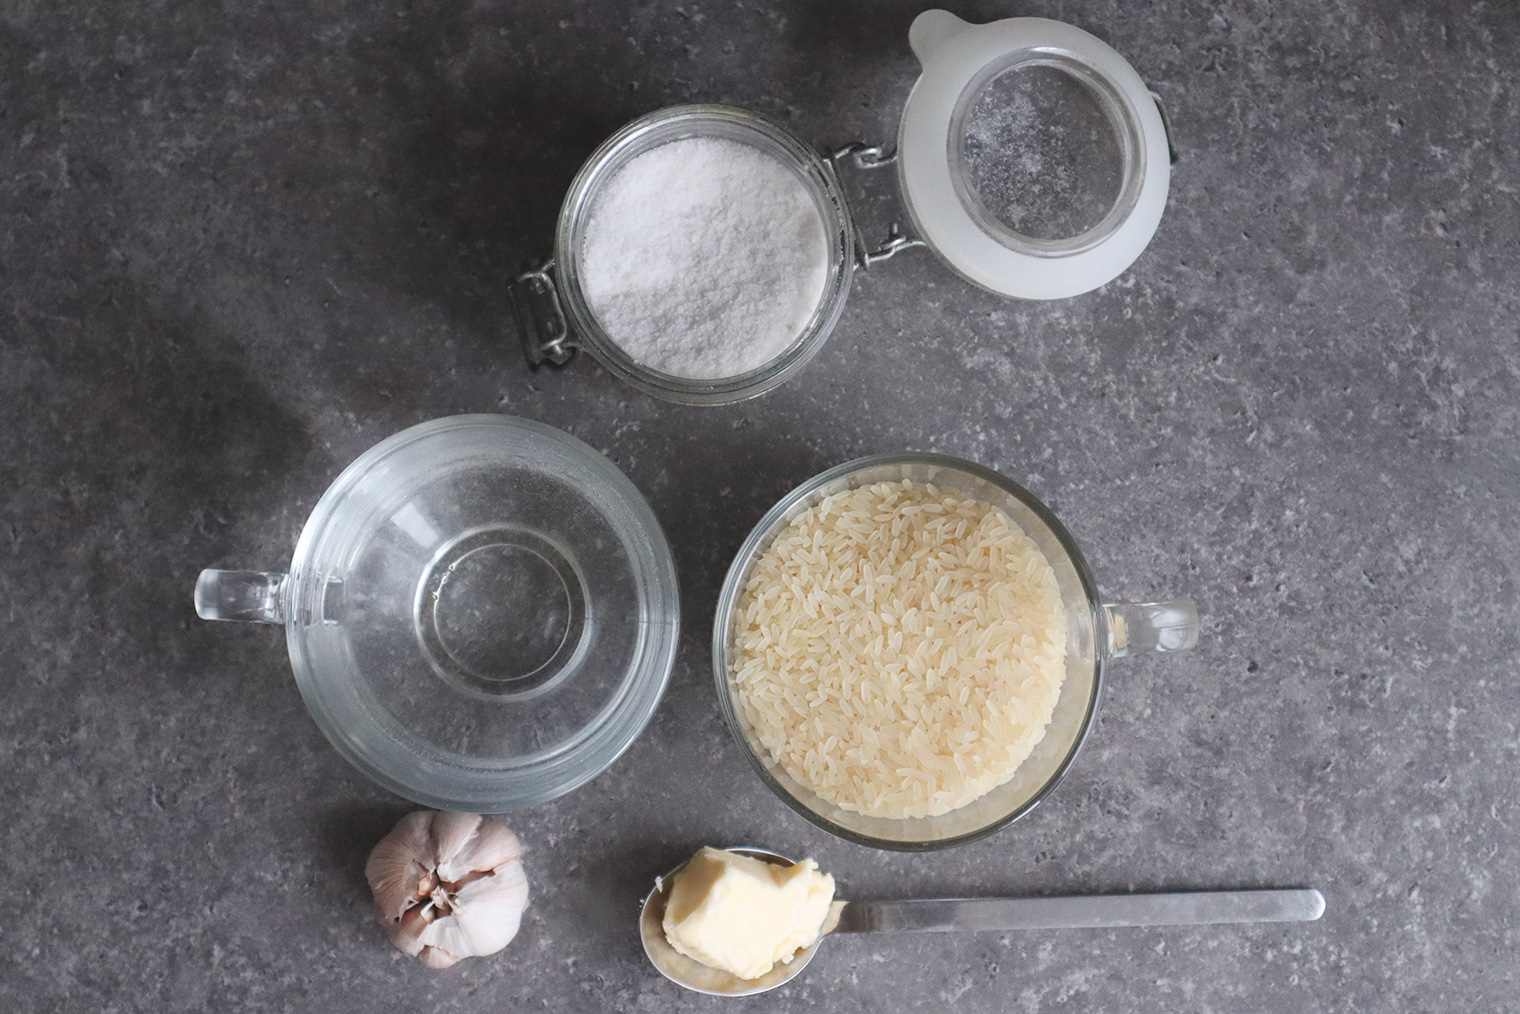 Мои ингредиенты для риса на гарнир: шлифованный пропаренный длиннозерный рис, вода, чеснок, сливочное масло, соль